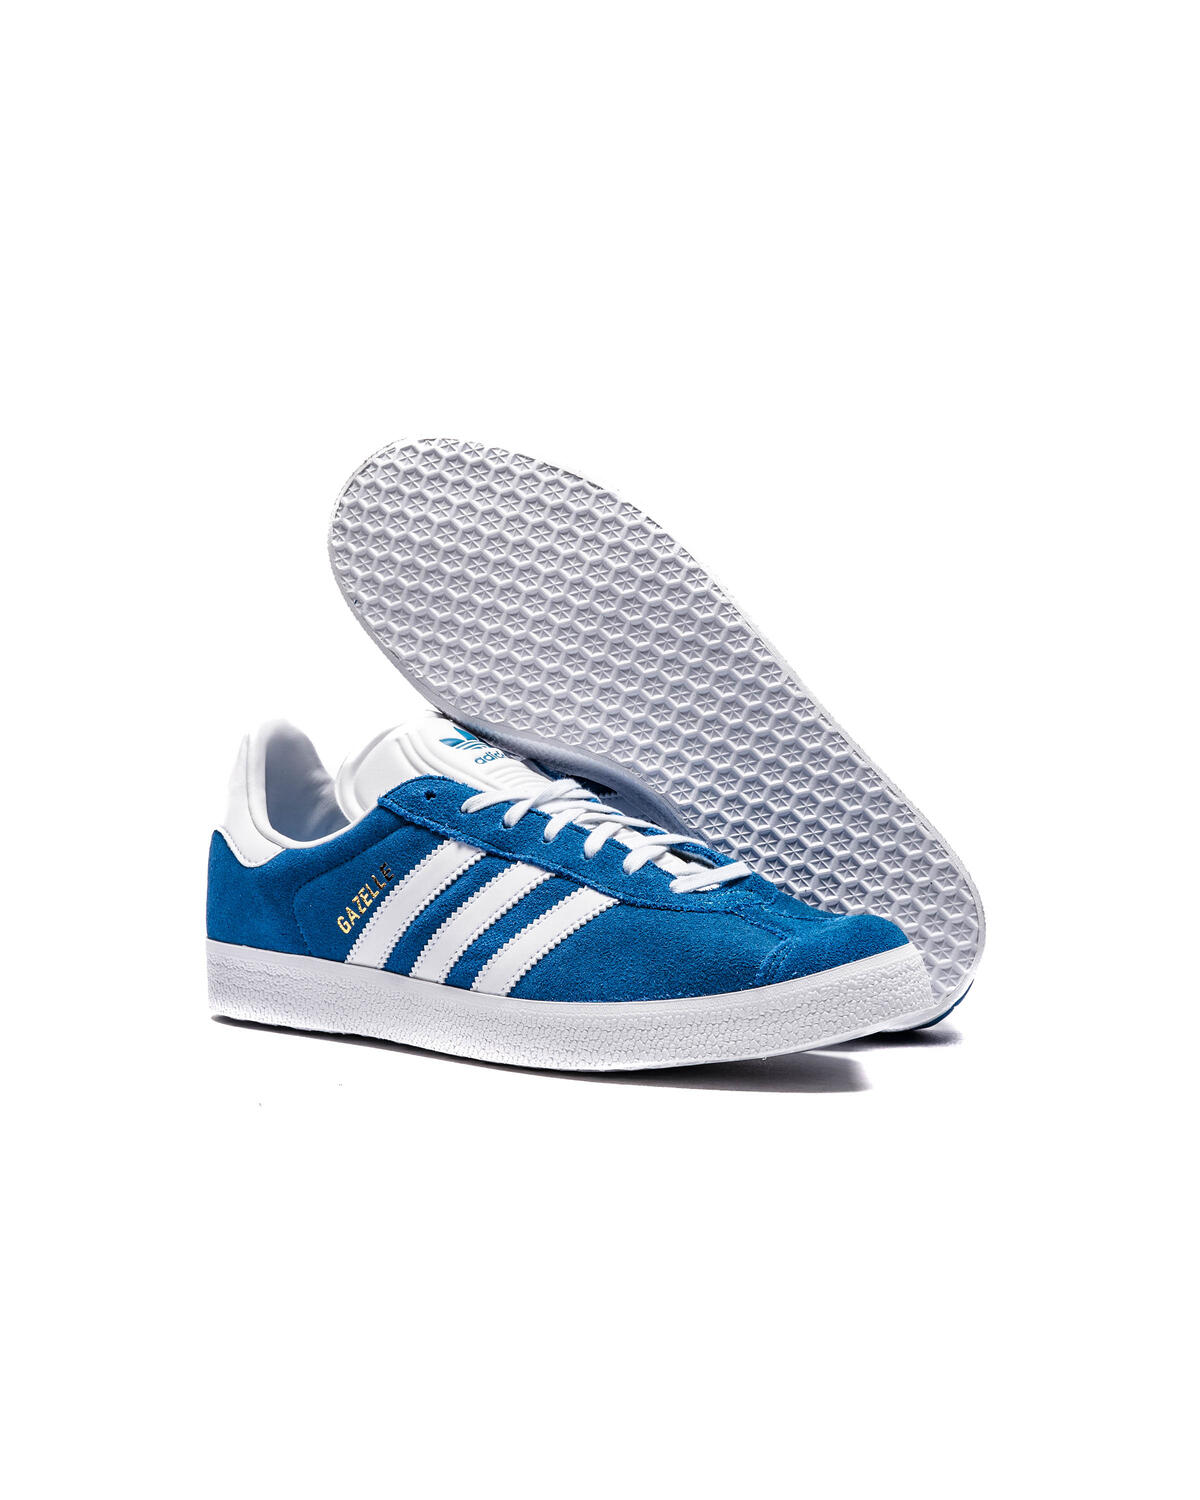 Adidas Gazelle Originals Shoes Sneakers Royal Blue/White/Gold S76227 Men's 9